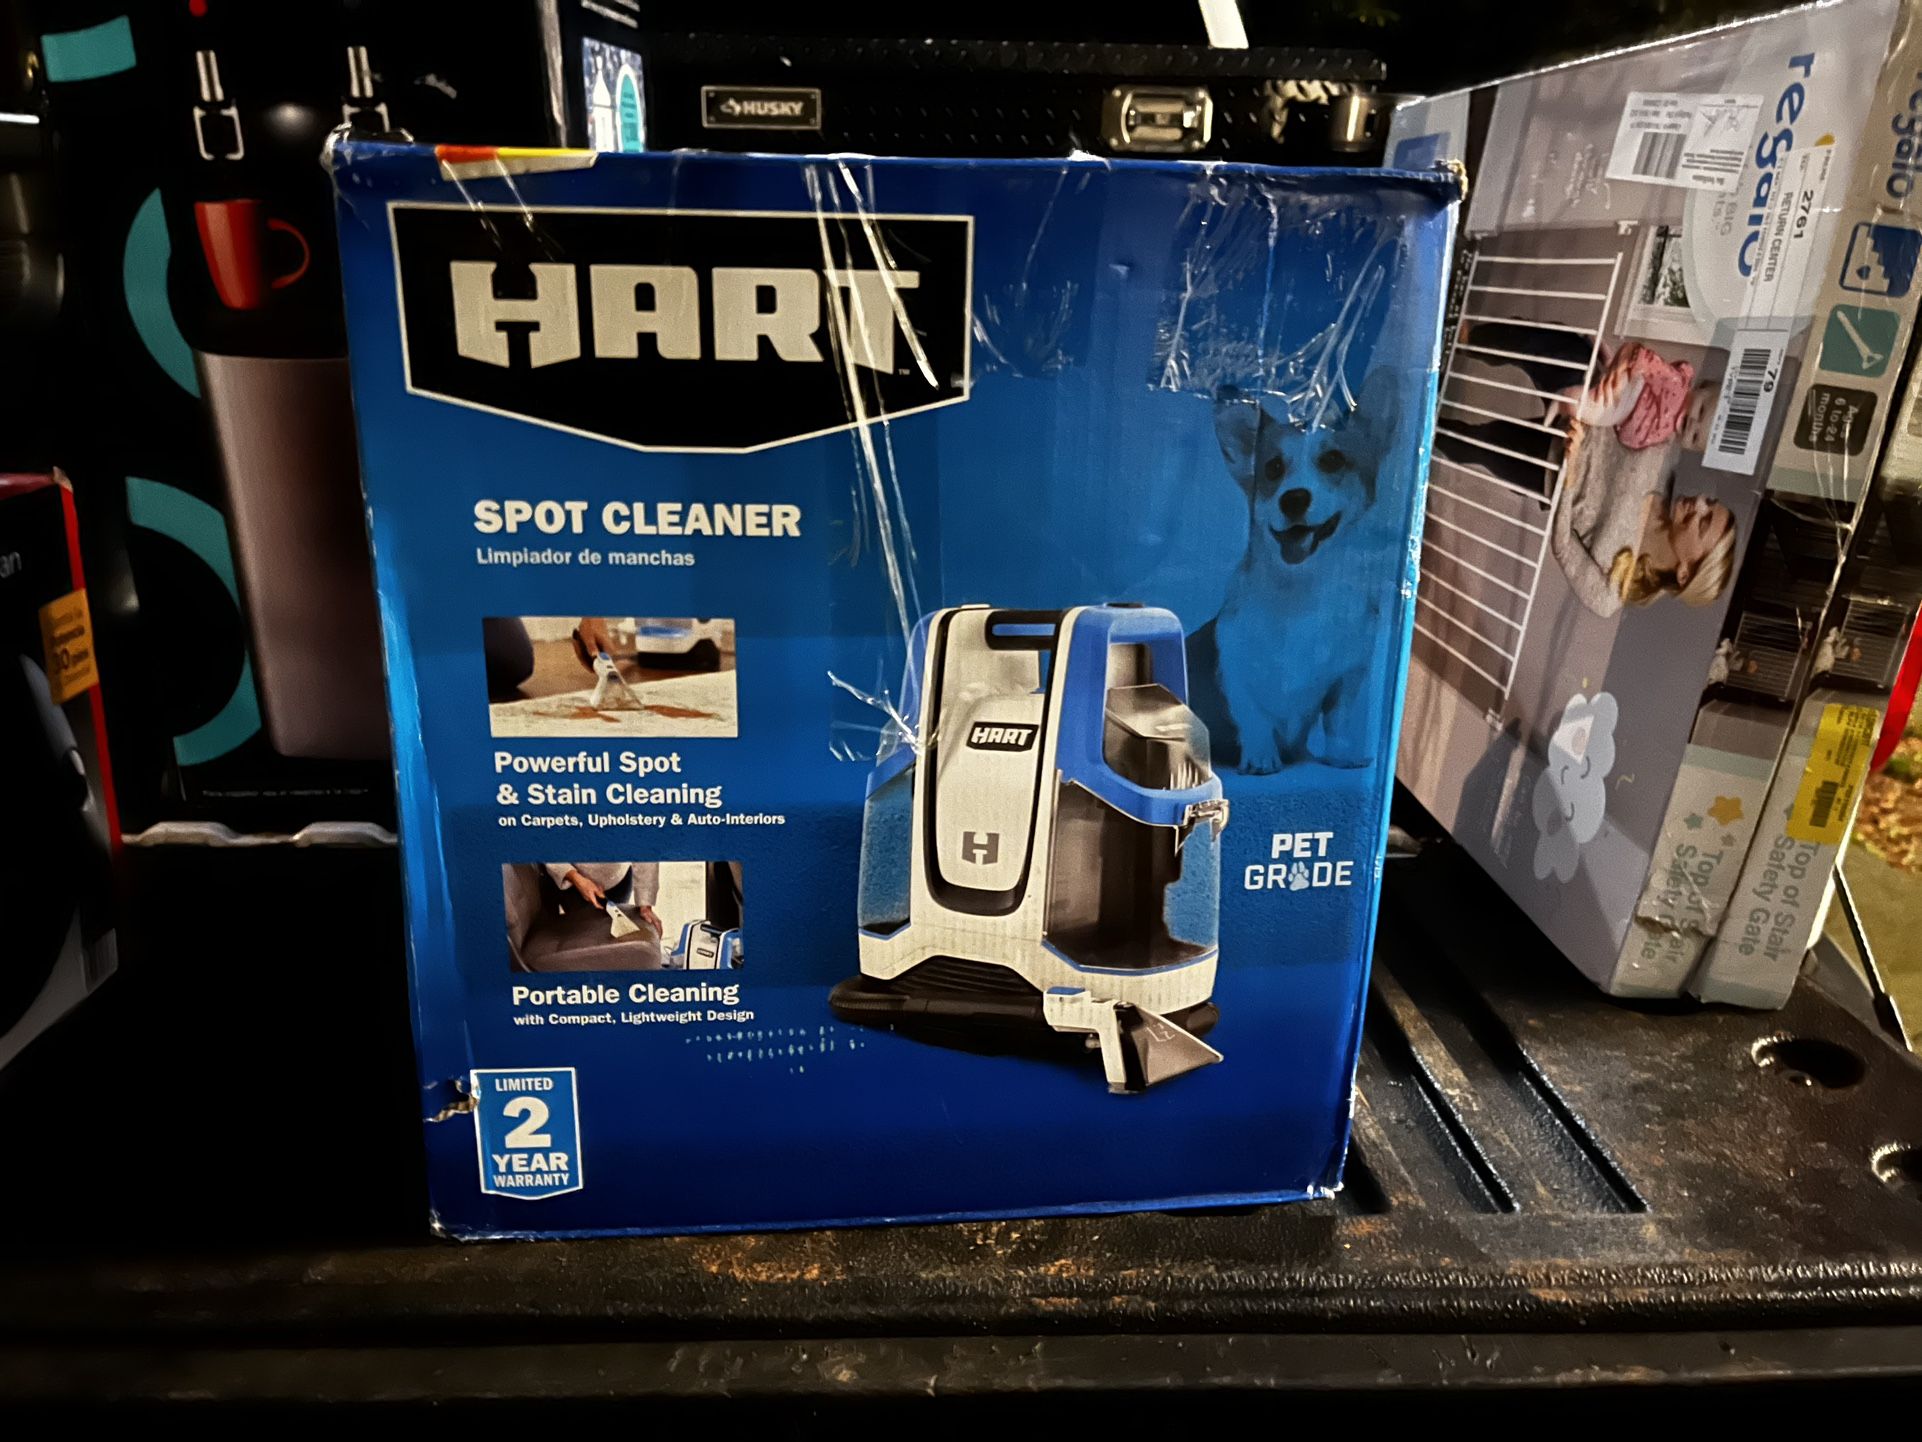 HART Spot Cleaner